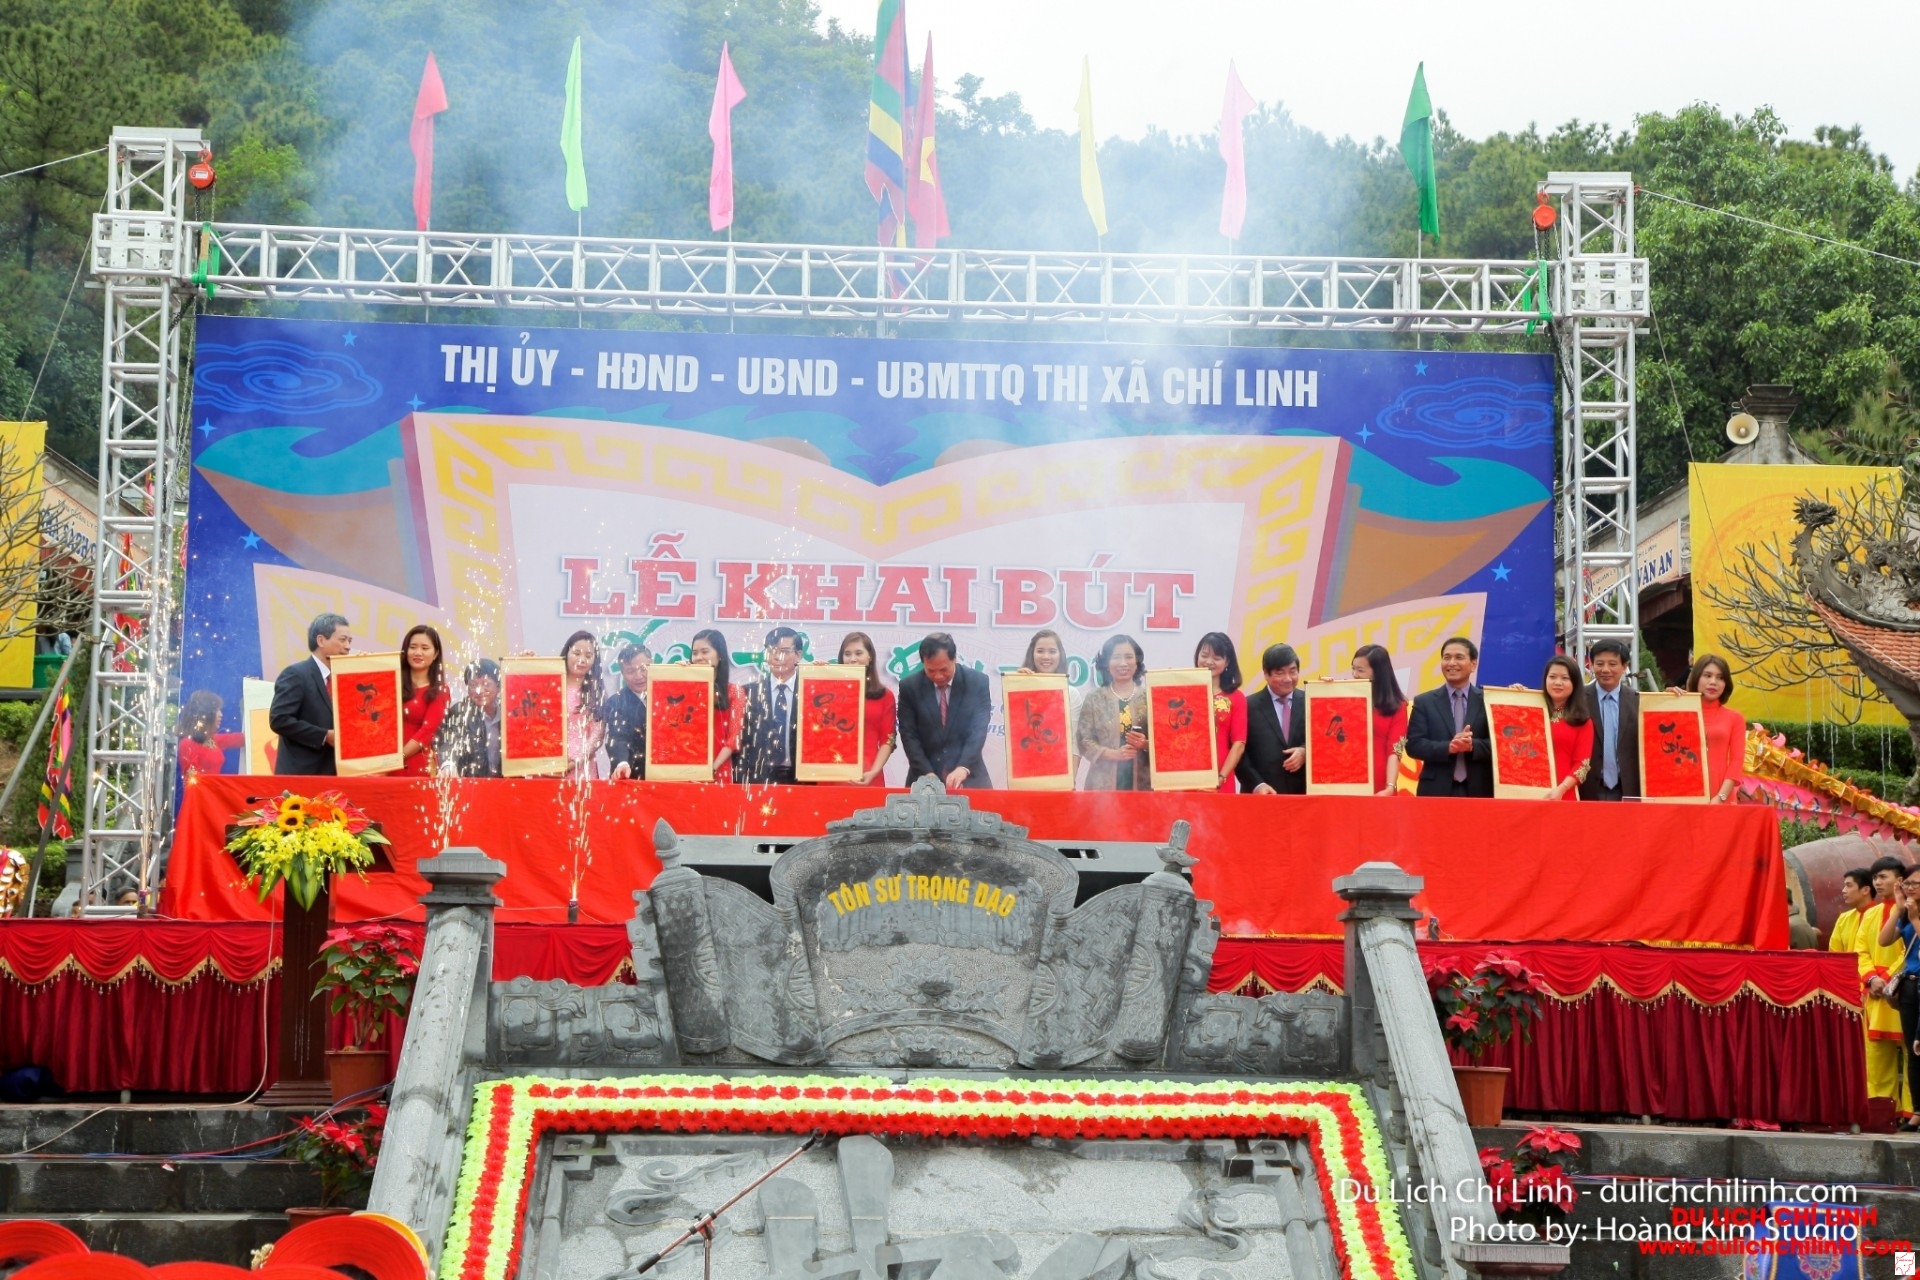 Lễ dâng hương khai bút ở đền thờ Nhà giáo Chu Văn An (thị xã Chí Linh, Hải Dương)